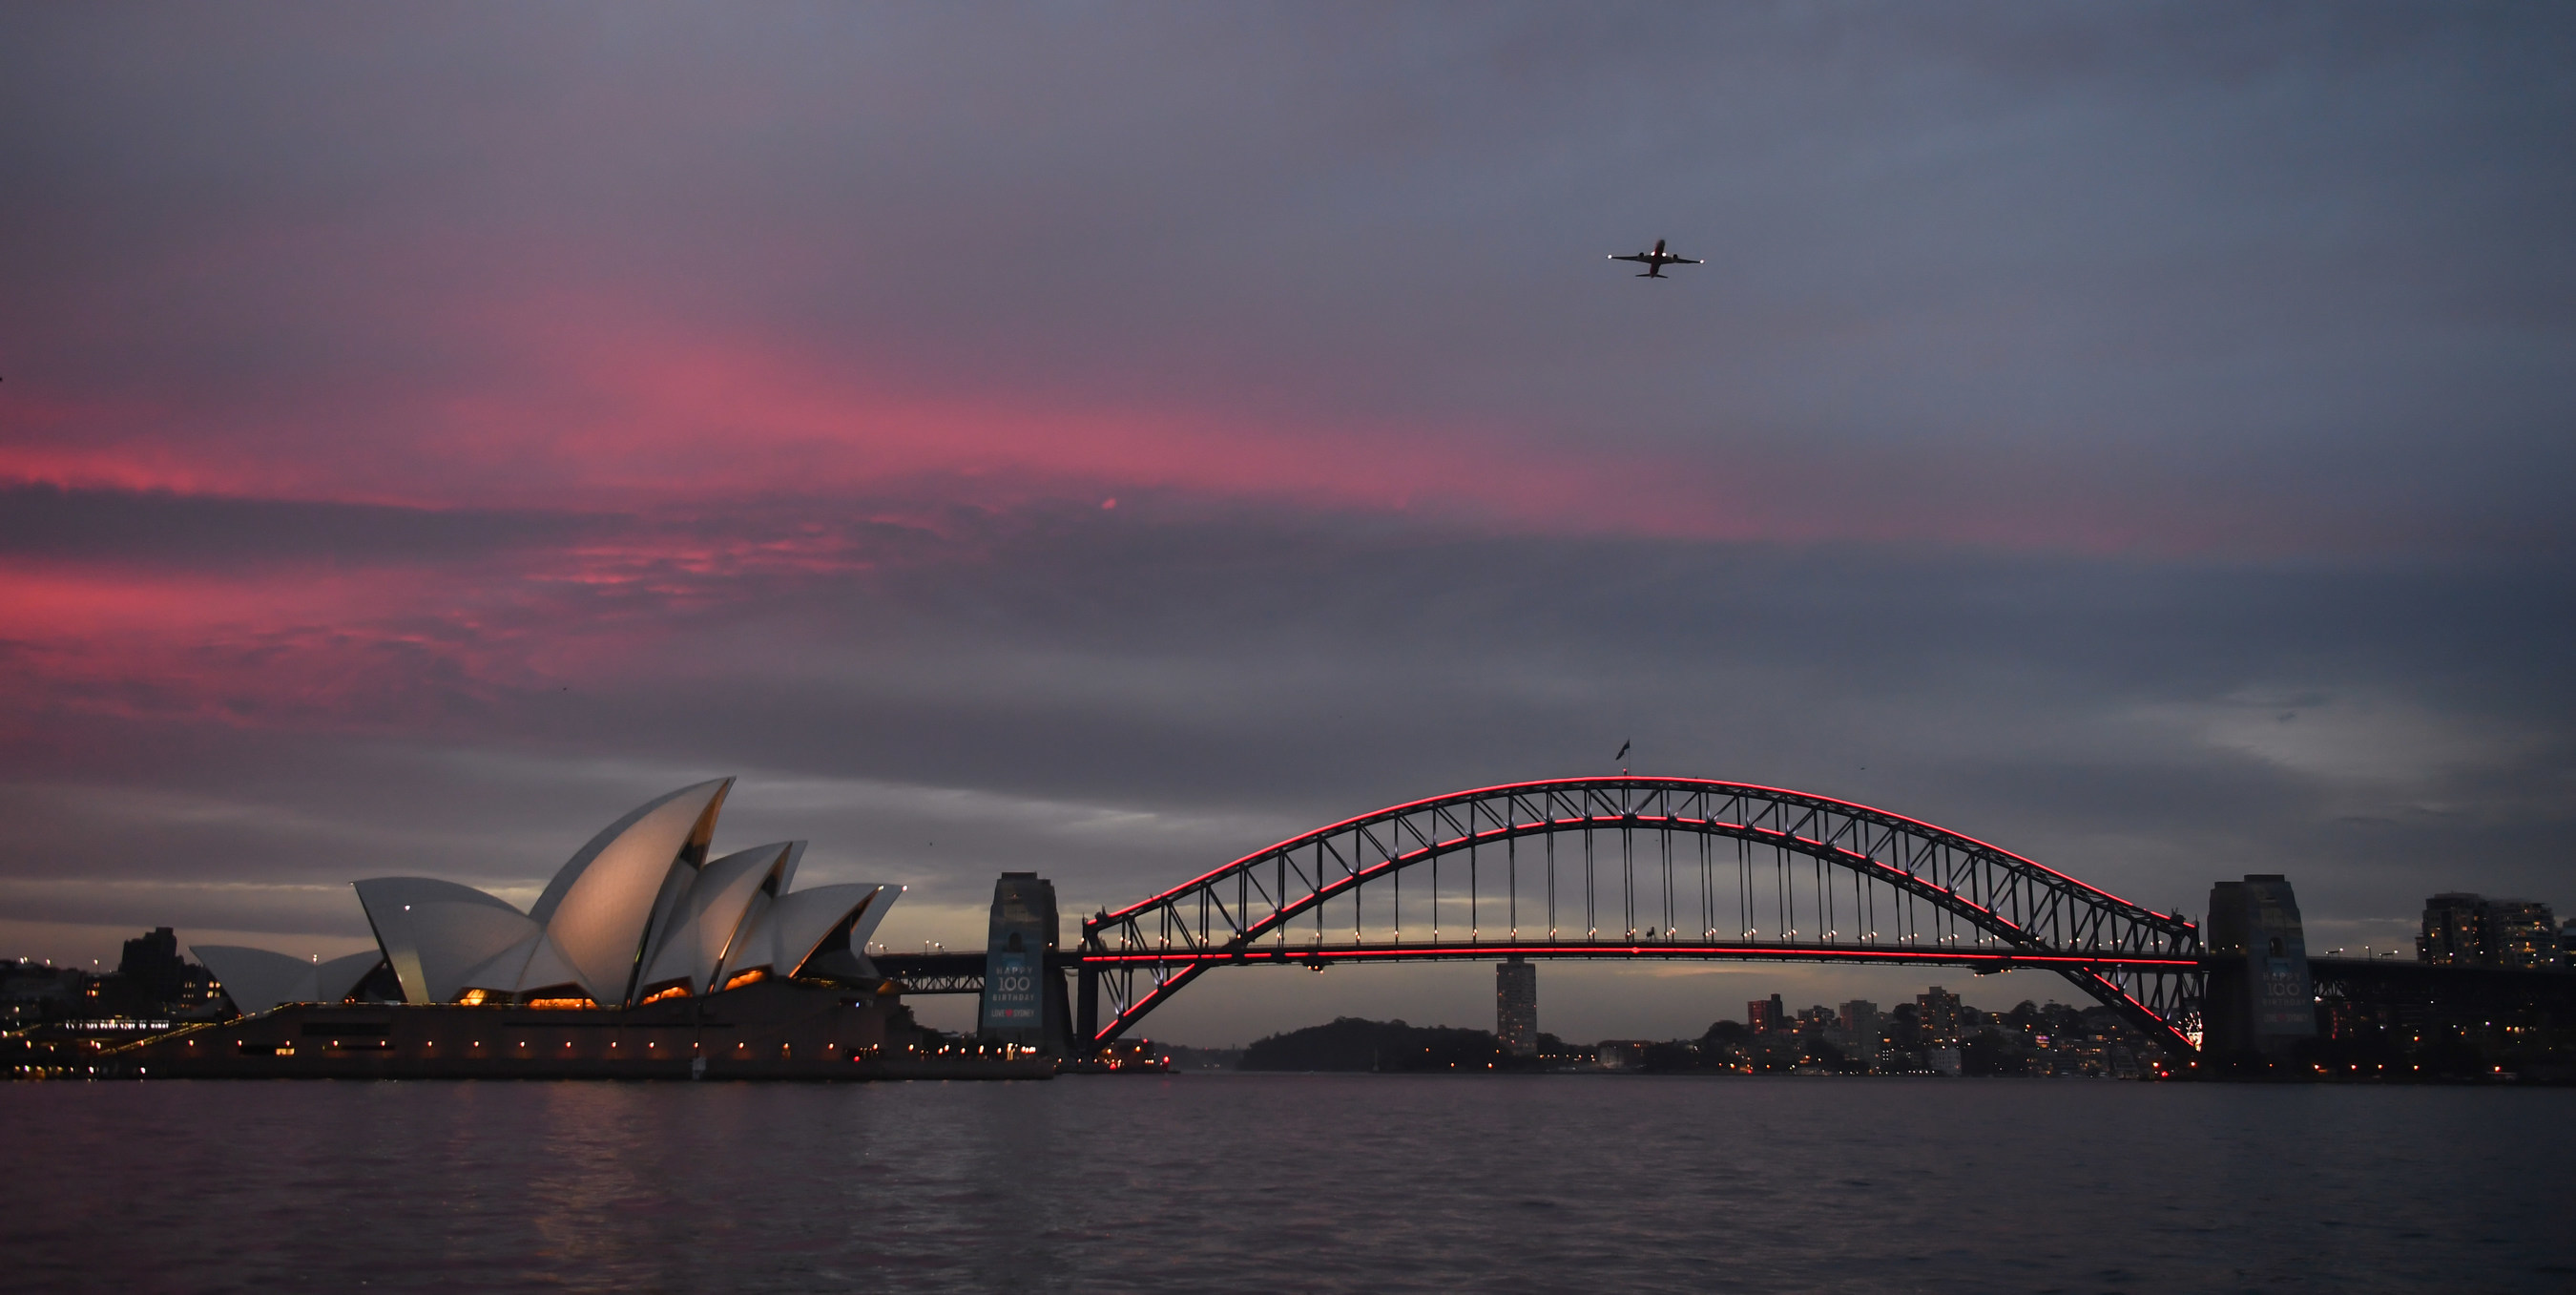 为纪念澳航百年诞辰,悉尼举办了一场盛大的庆典,点亮悉尼海港大桥作为